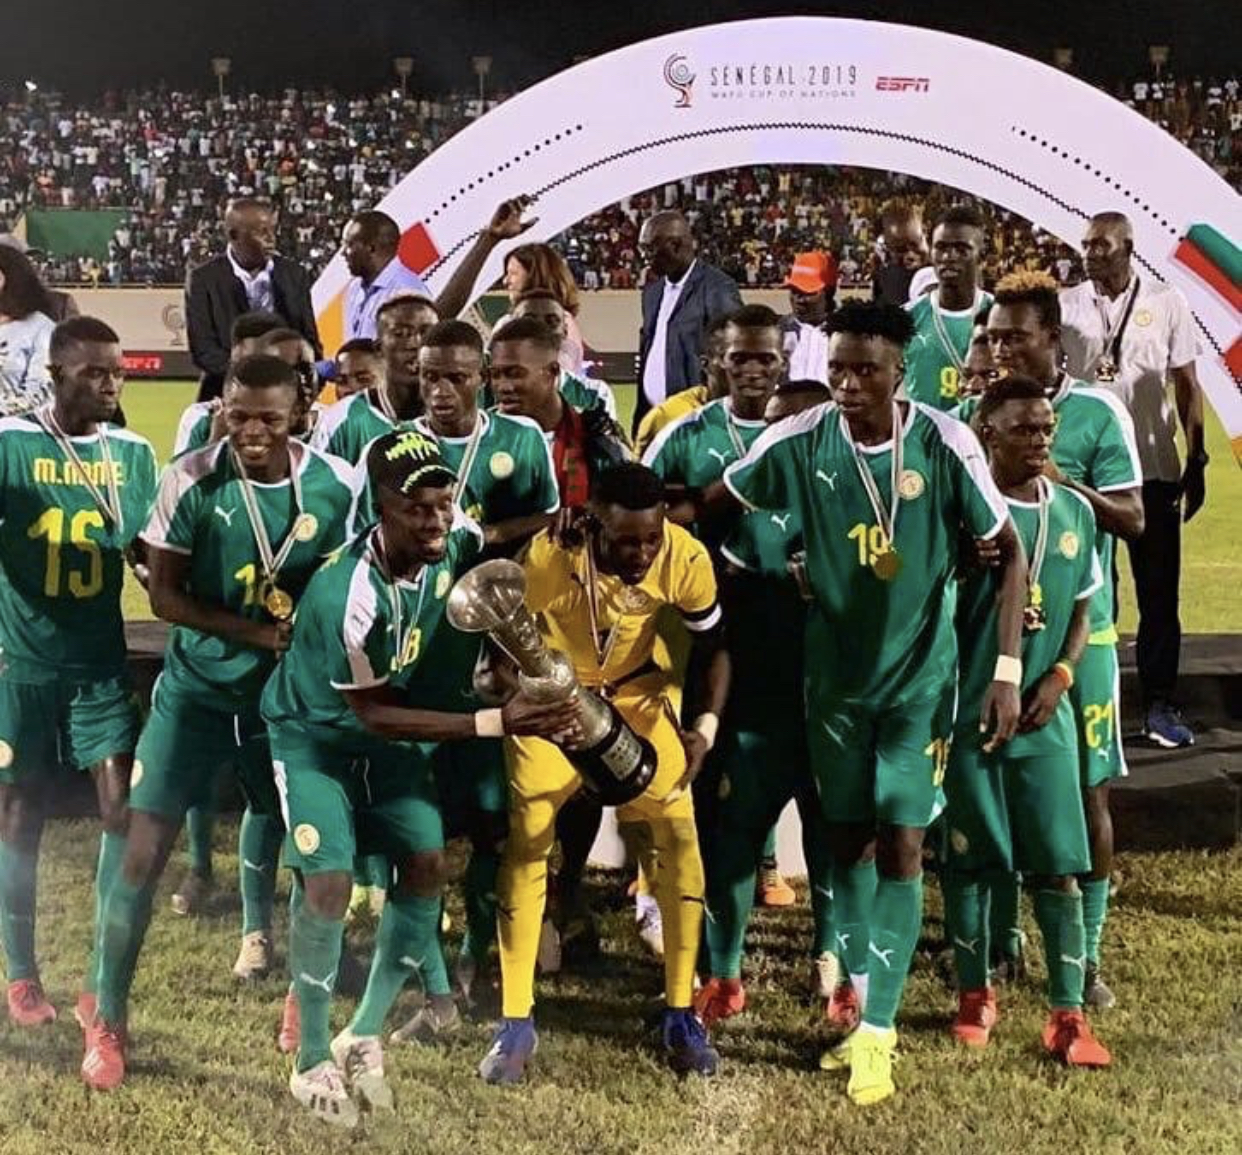 UFOA : Le Sénégal remporte le tournoi des 16 Nations en dominant le Ghana aux tirs au but  (1-1, 3-1 aux t.a.b.)